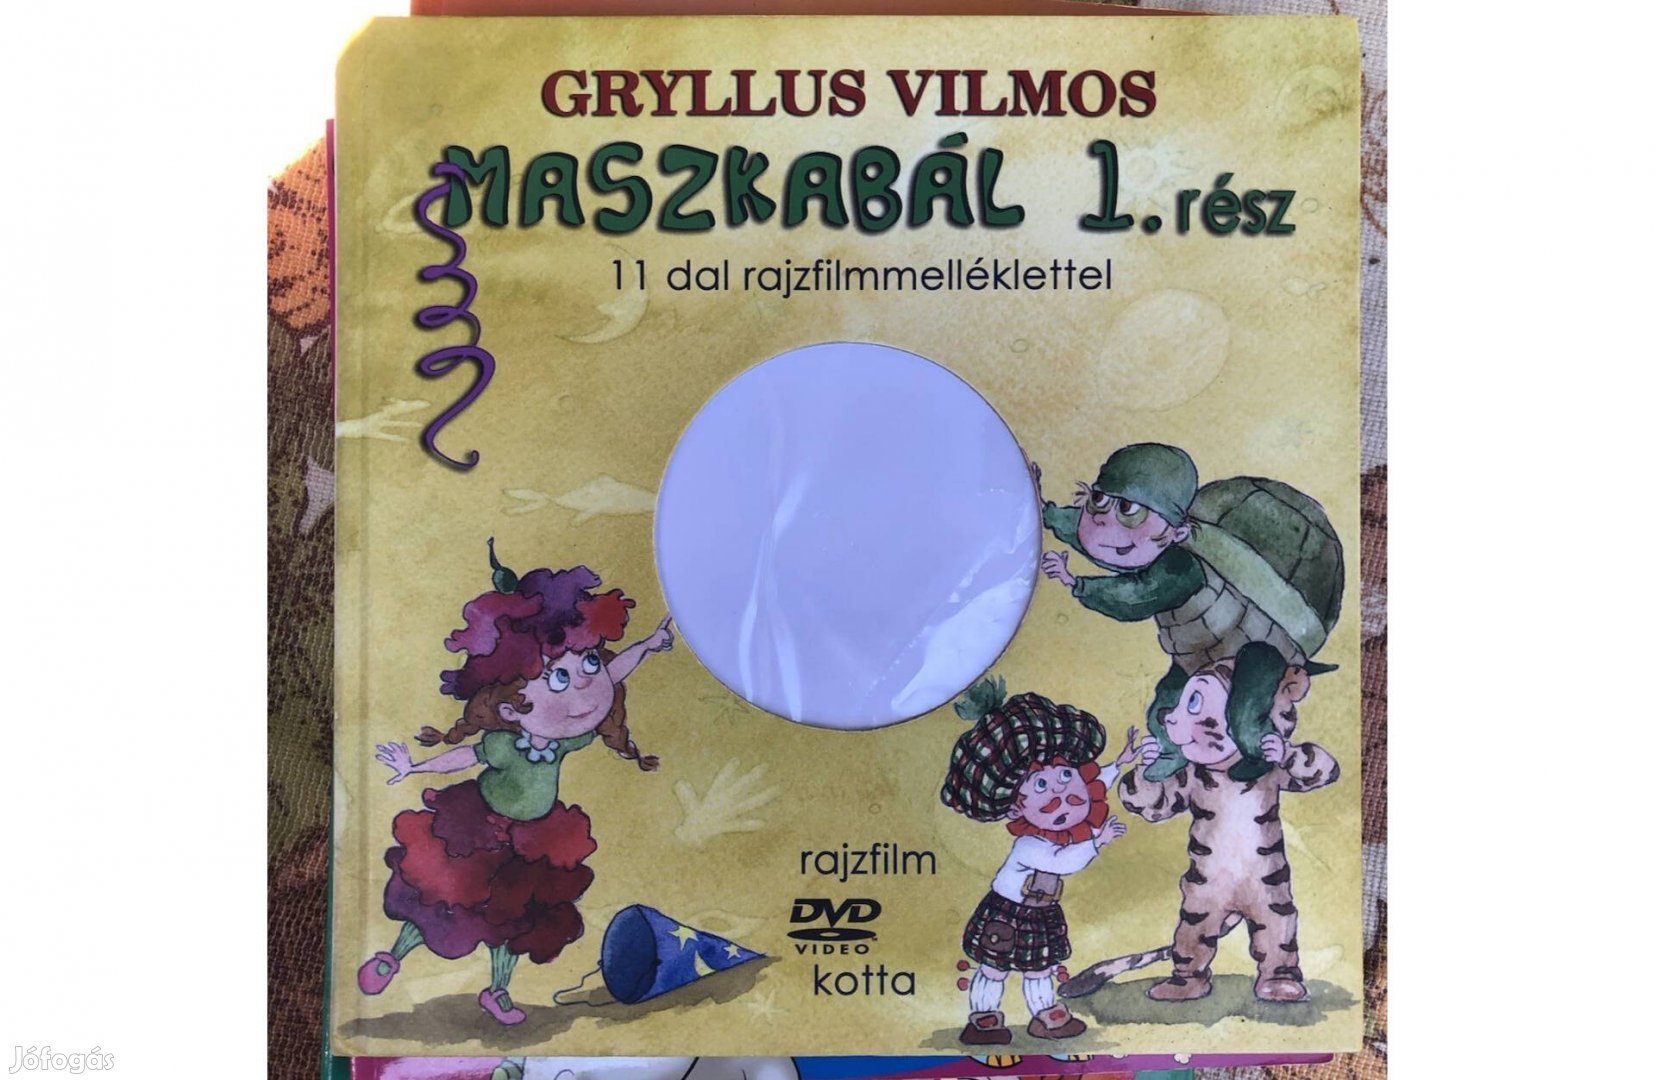 Gryllus Vilmos:Maszkabál 1. könyv dvd nélkül 1000 Ft